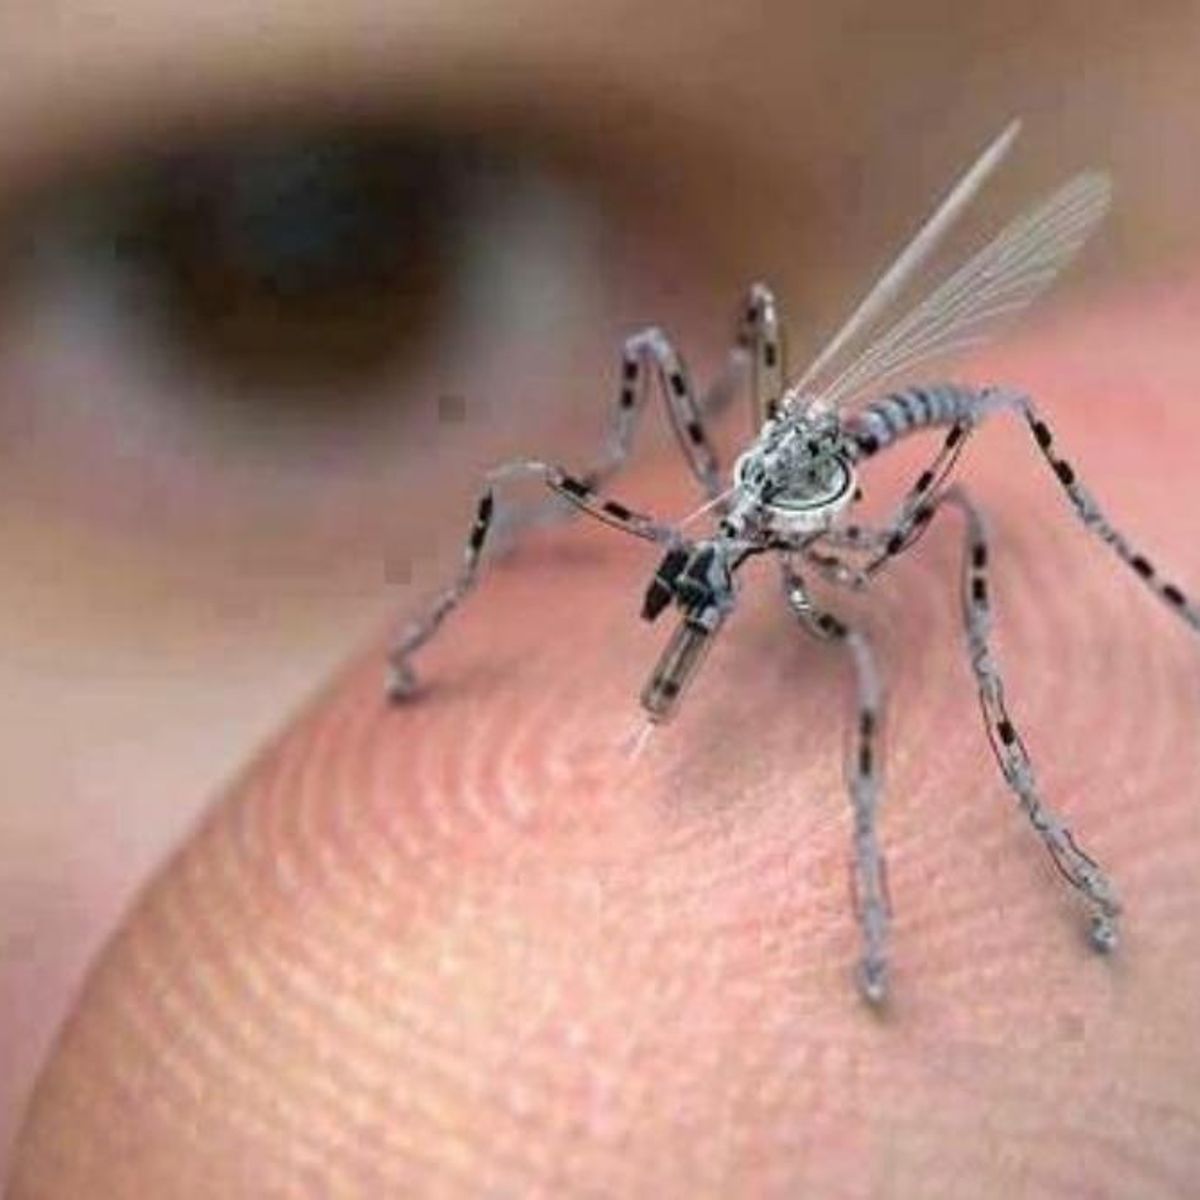 sagging Et hundrede år strøm Insect Spy Drone | Snopes.com